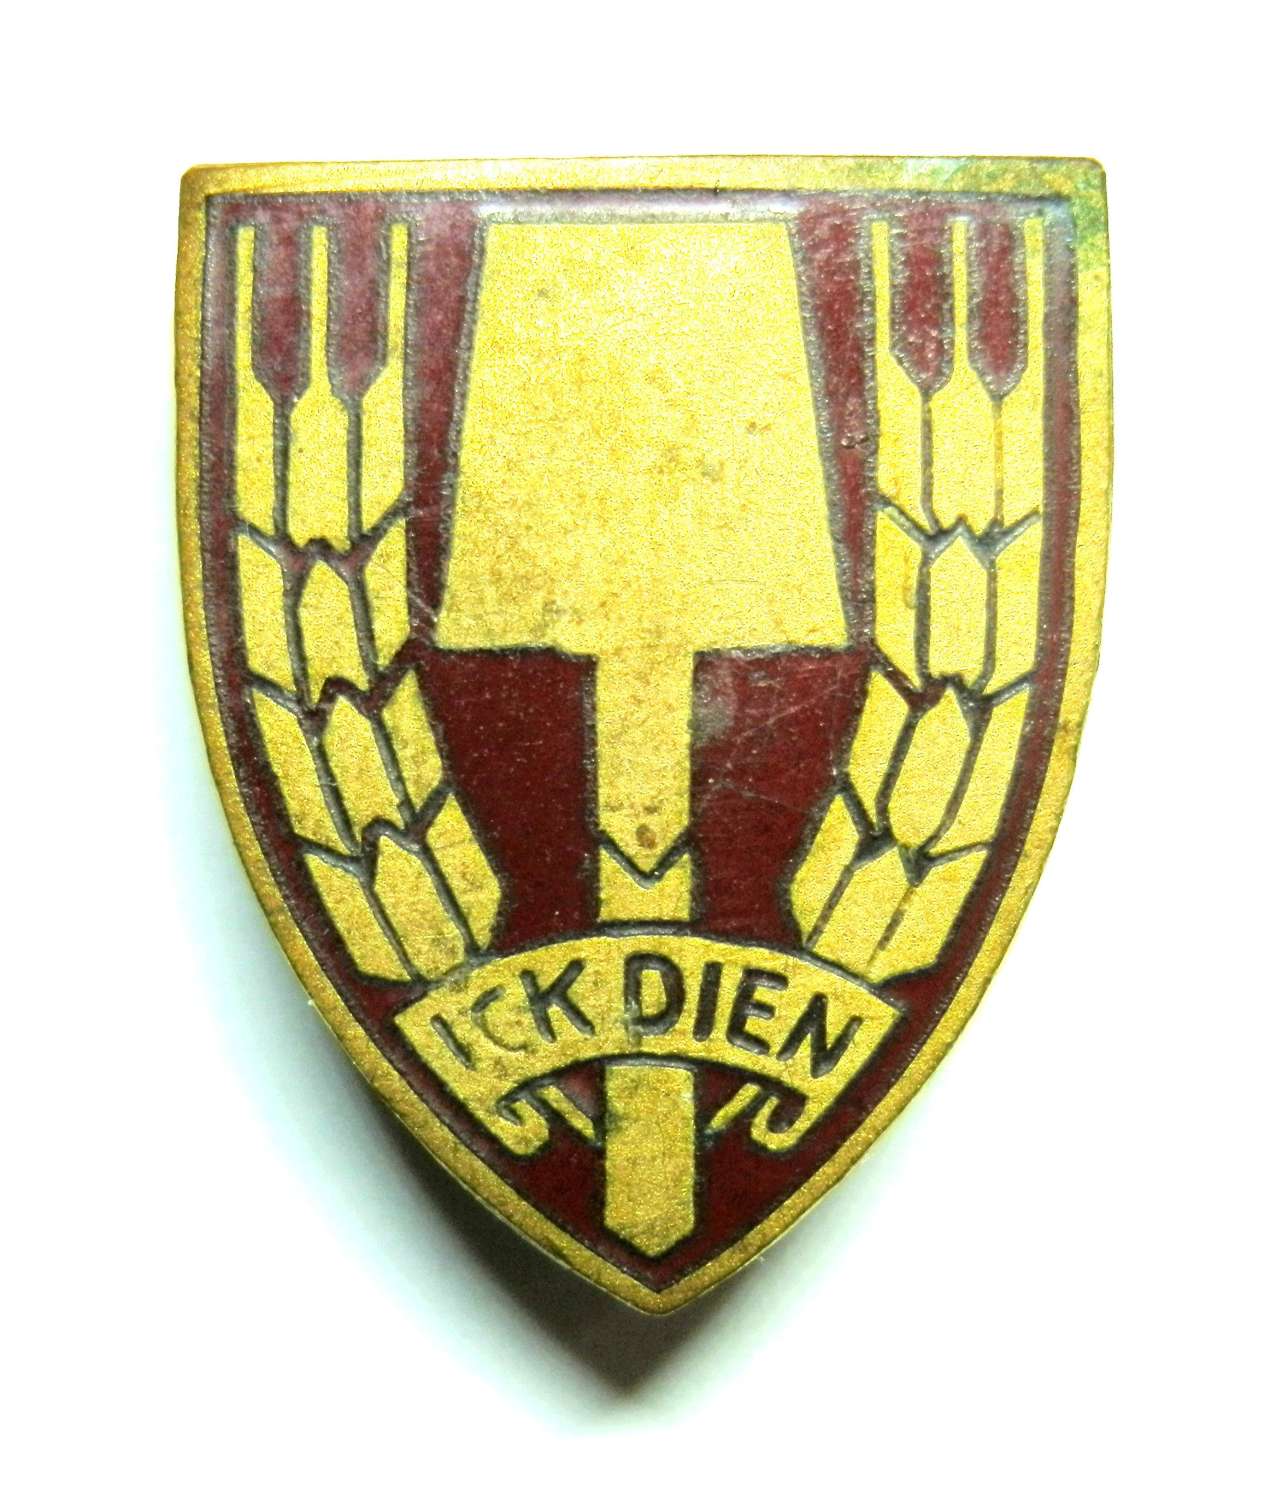 Dutch Labour Service Lapel Badge.